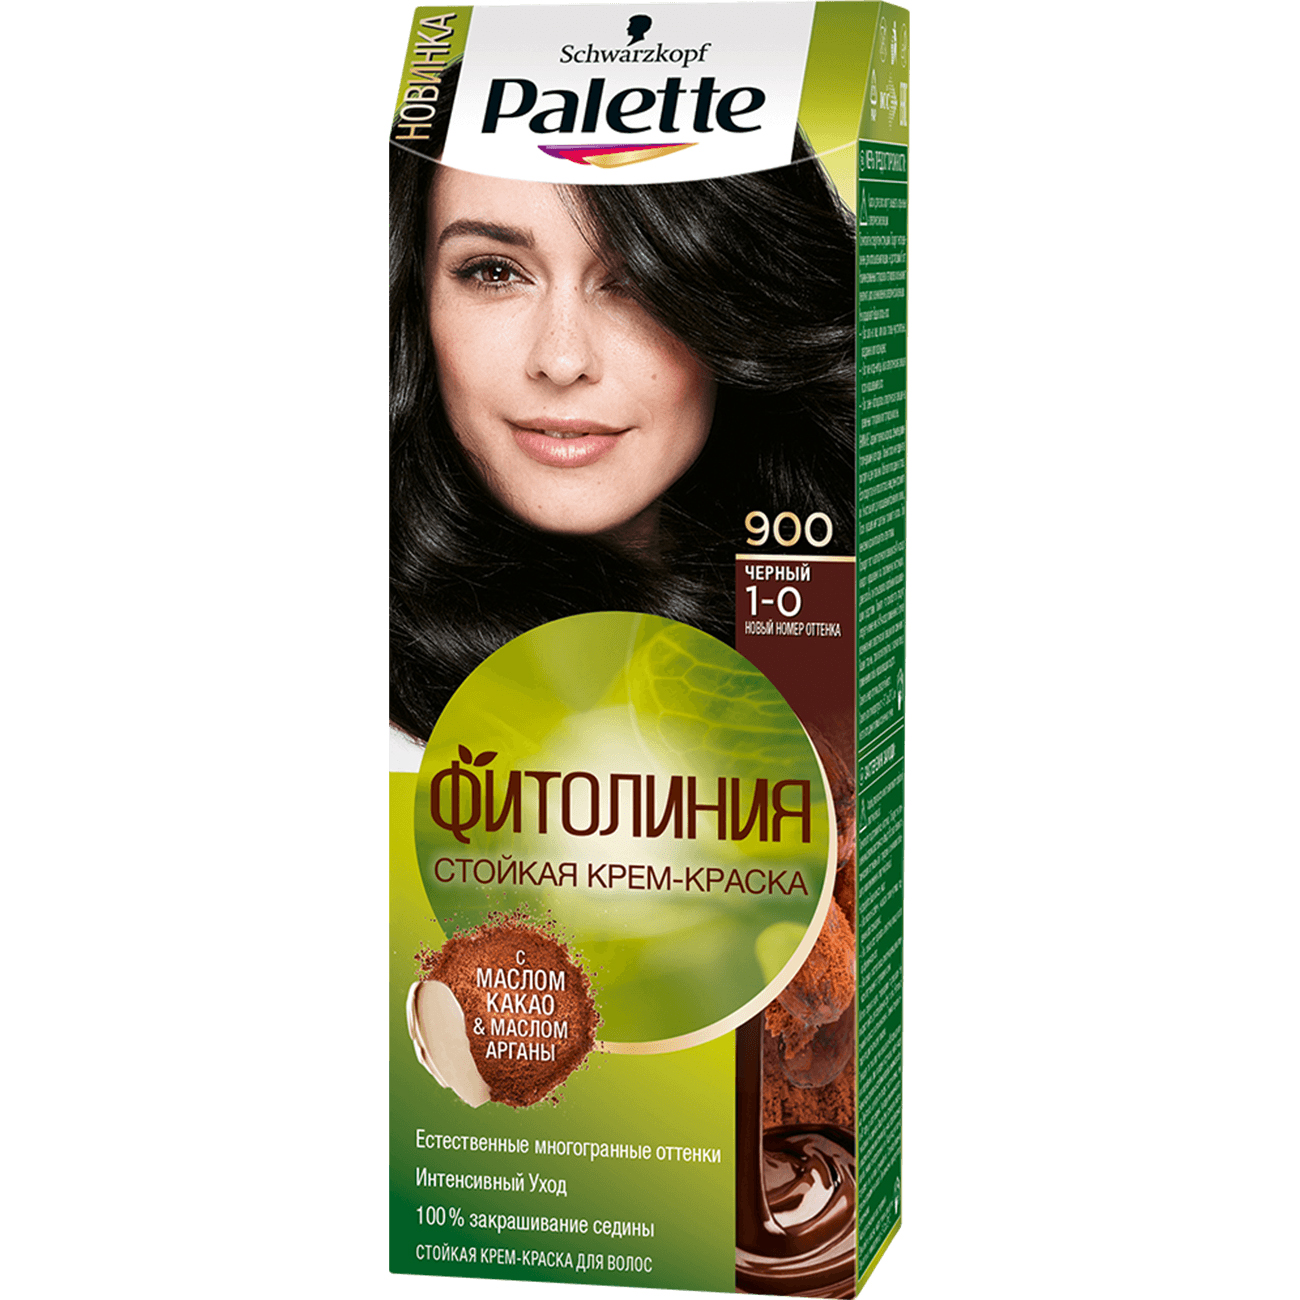 Крем-краска для волос Palette Фитолиния 1-0, 900 Черный 110 мл крем краска для волос palette интенсивный 7 77 kr7 роскошный медный 110 мл